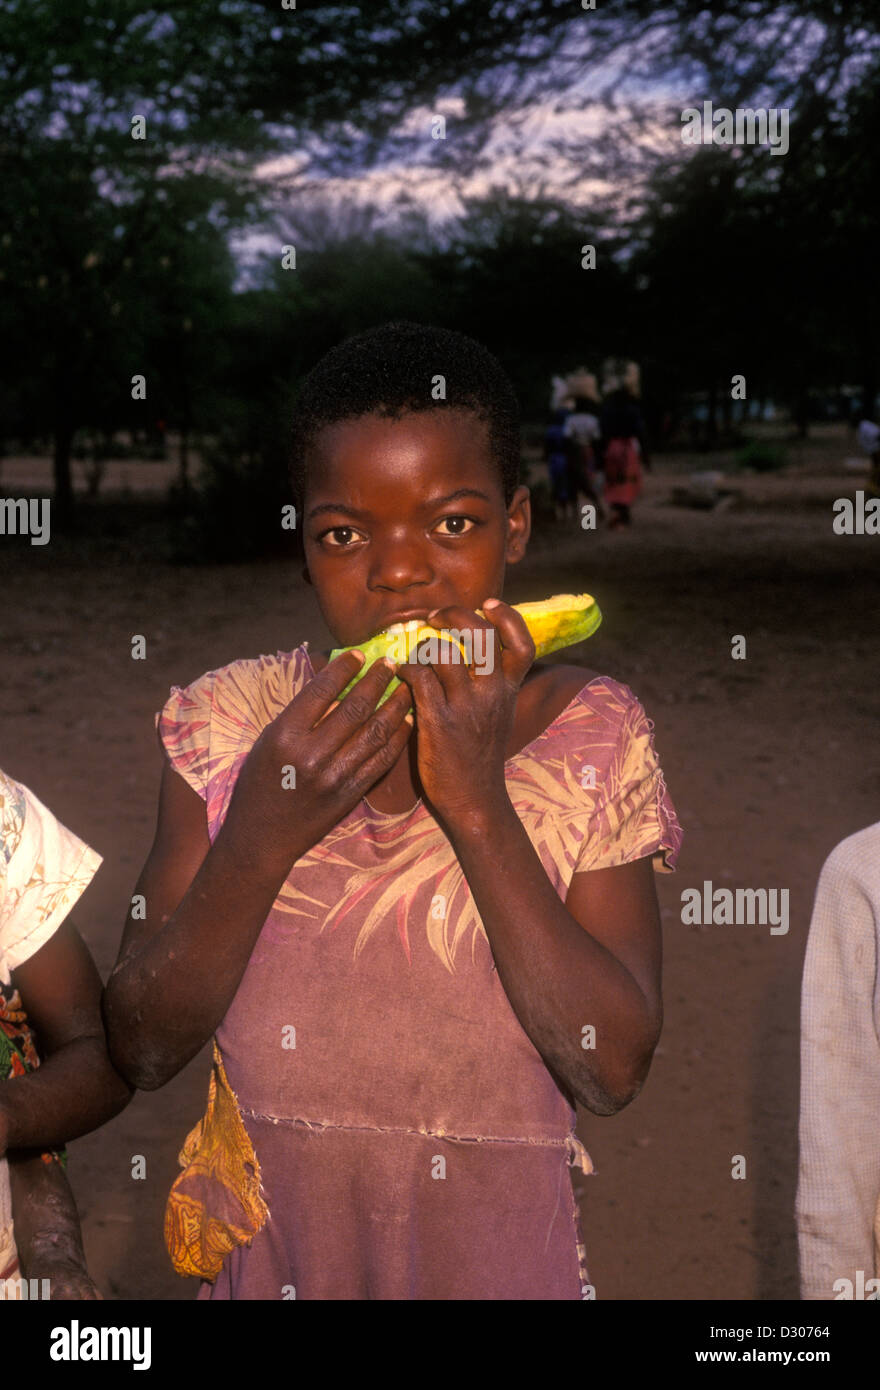 Ragazza dello Zimbabwe, ragazza, contatto visivo, vista frontale, ritratto, villaggio di Mahenye, Mahenye, Manicaland Province, Zimbabwe, Africa Foto Stock